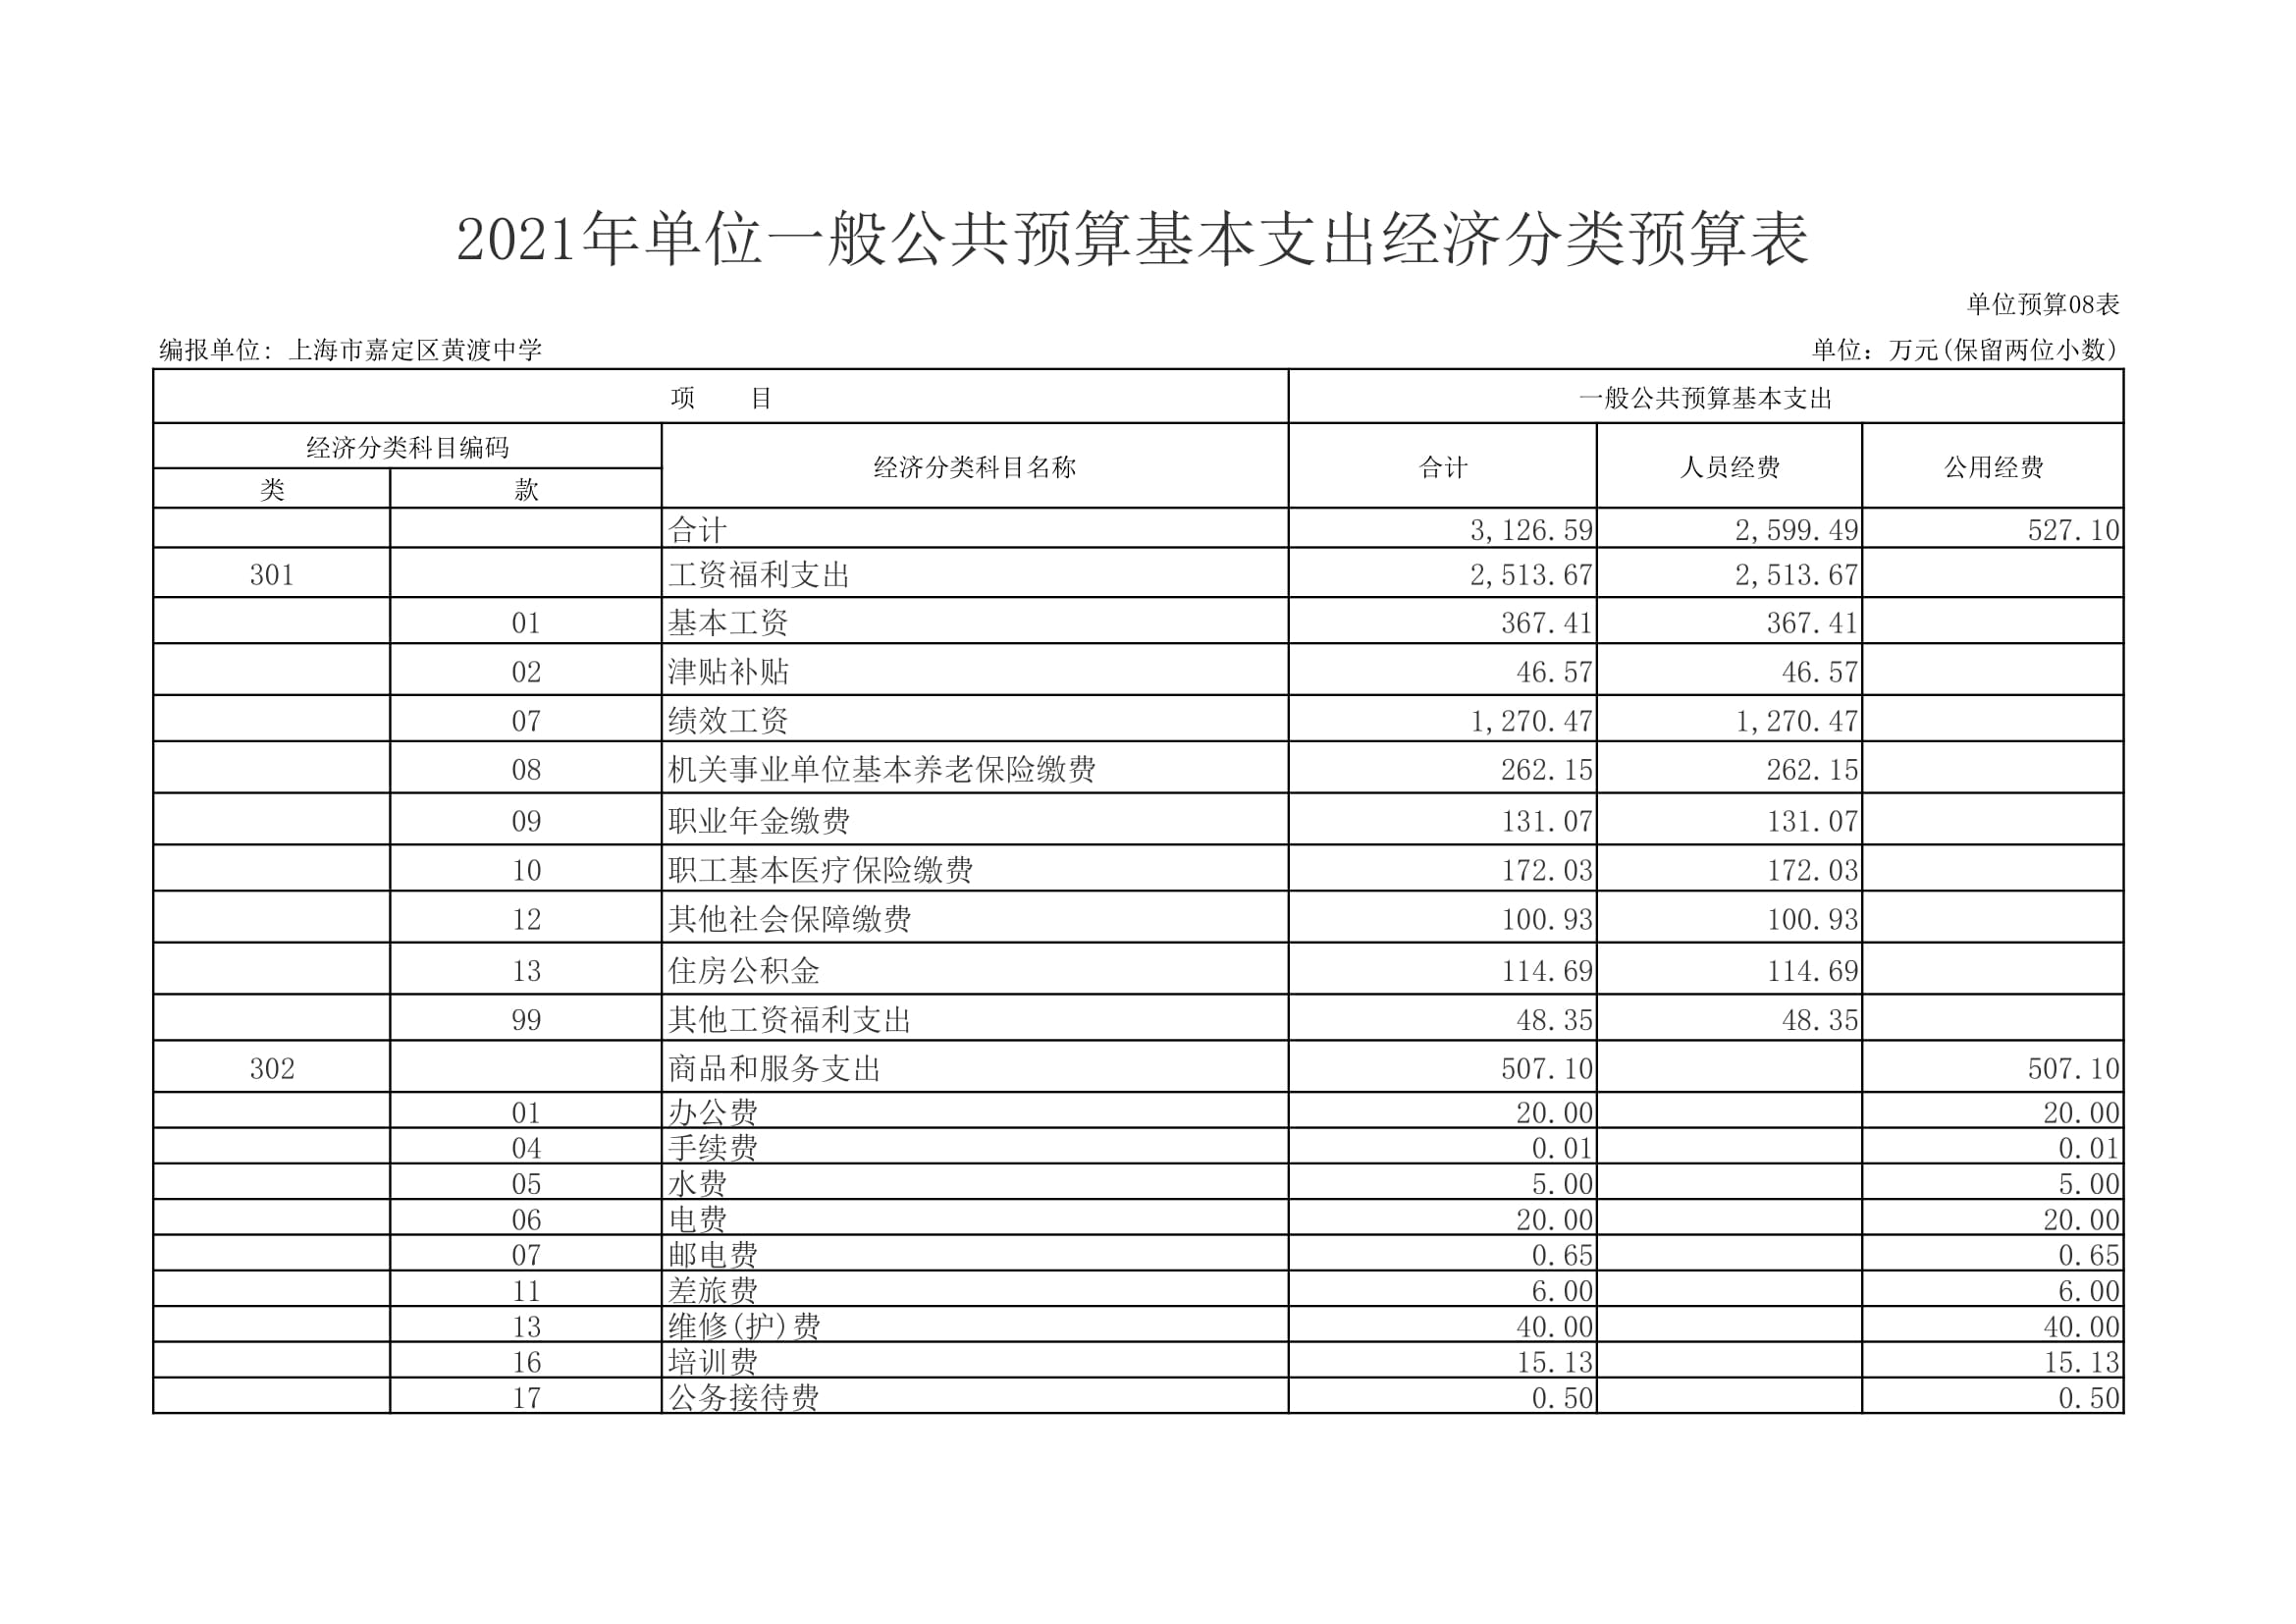 黄渡中学2021年单位支出预算表-15.jpg